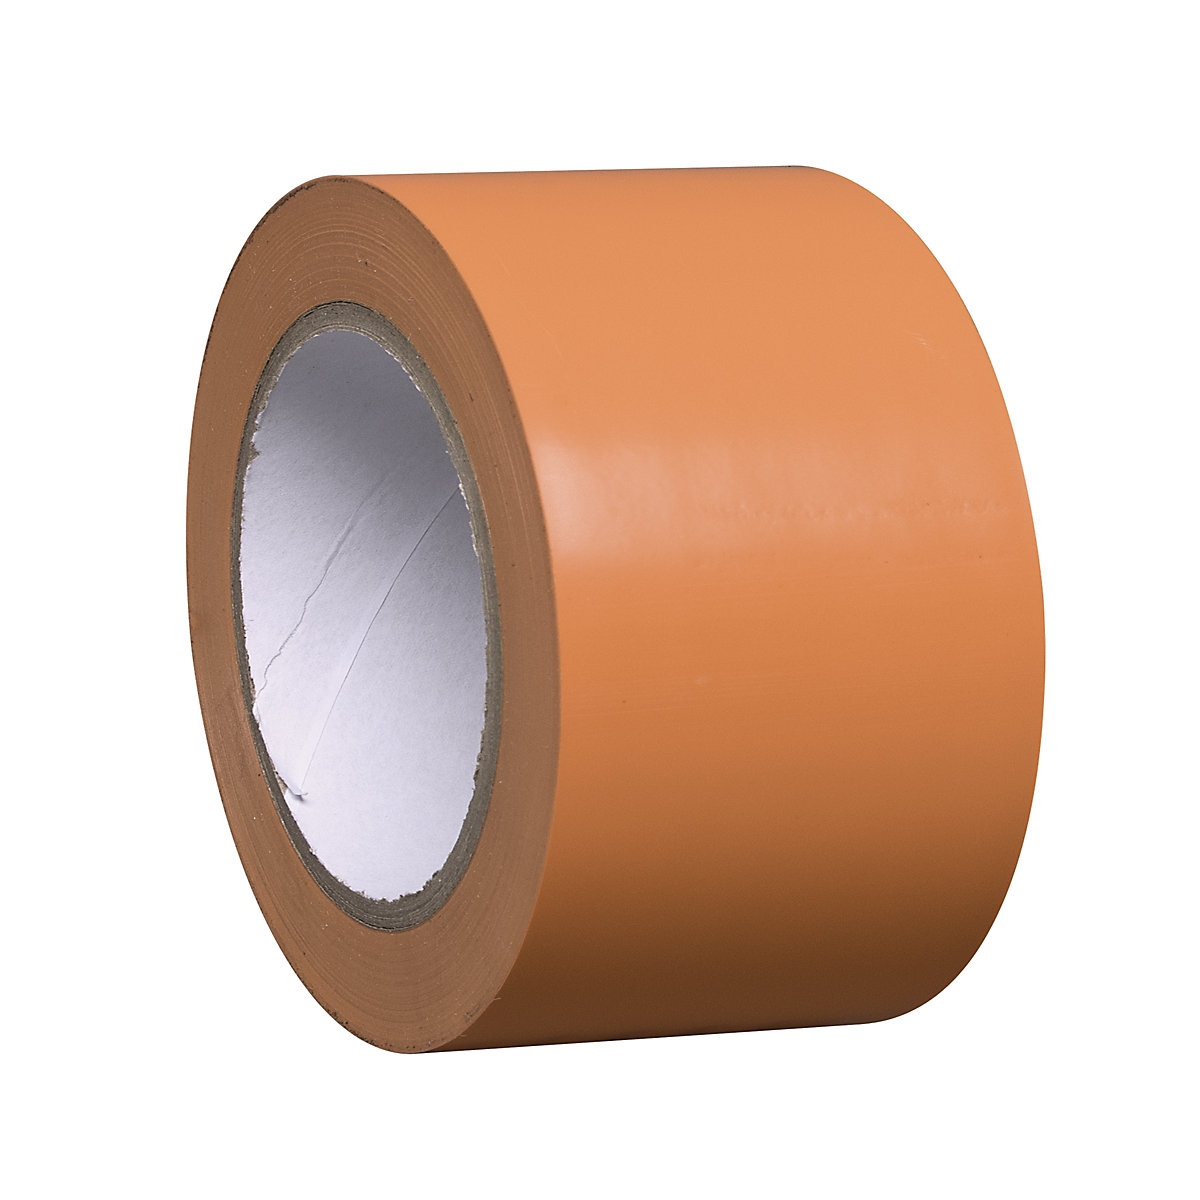 Traka za označavanje podova od vinila, jednobojna, širina 75 mm, u narančastoj boji, pak. 8 rola-4